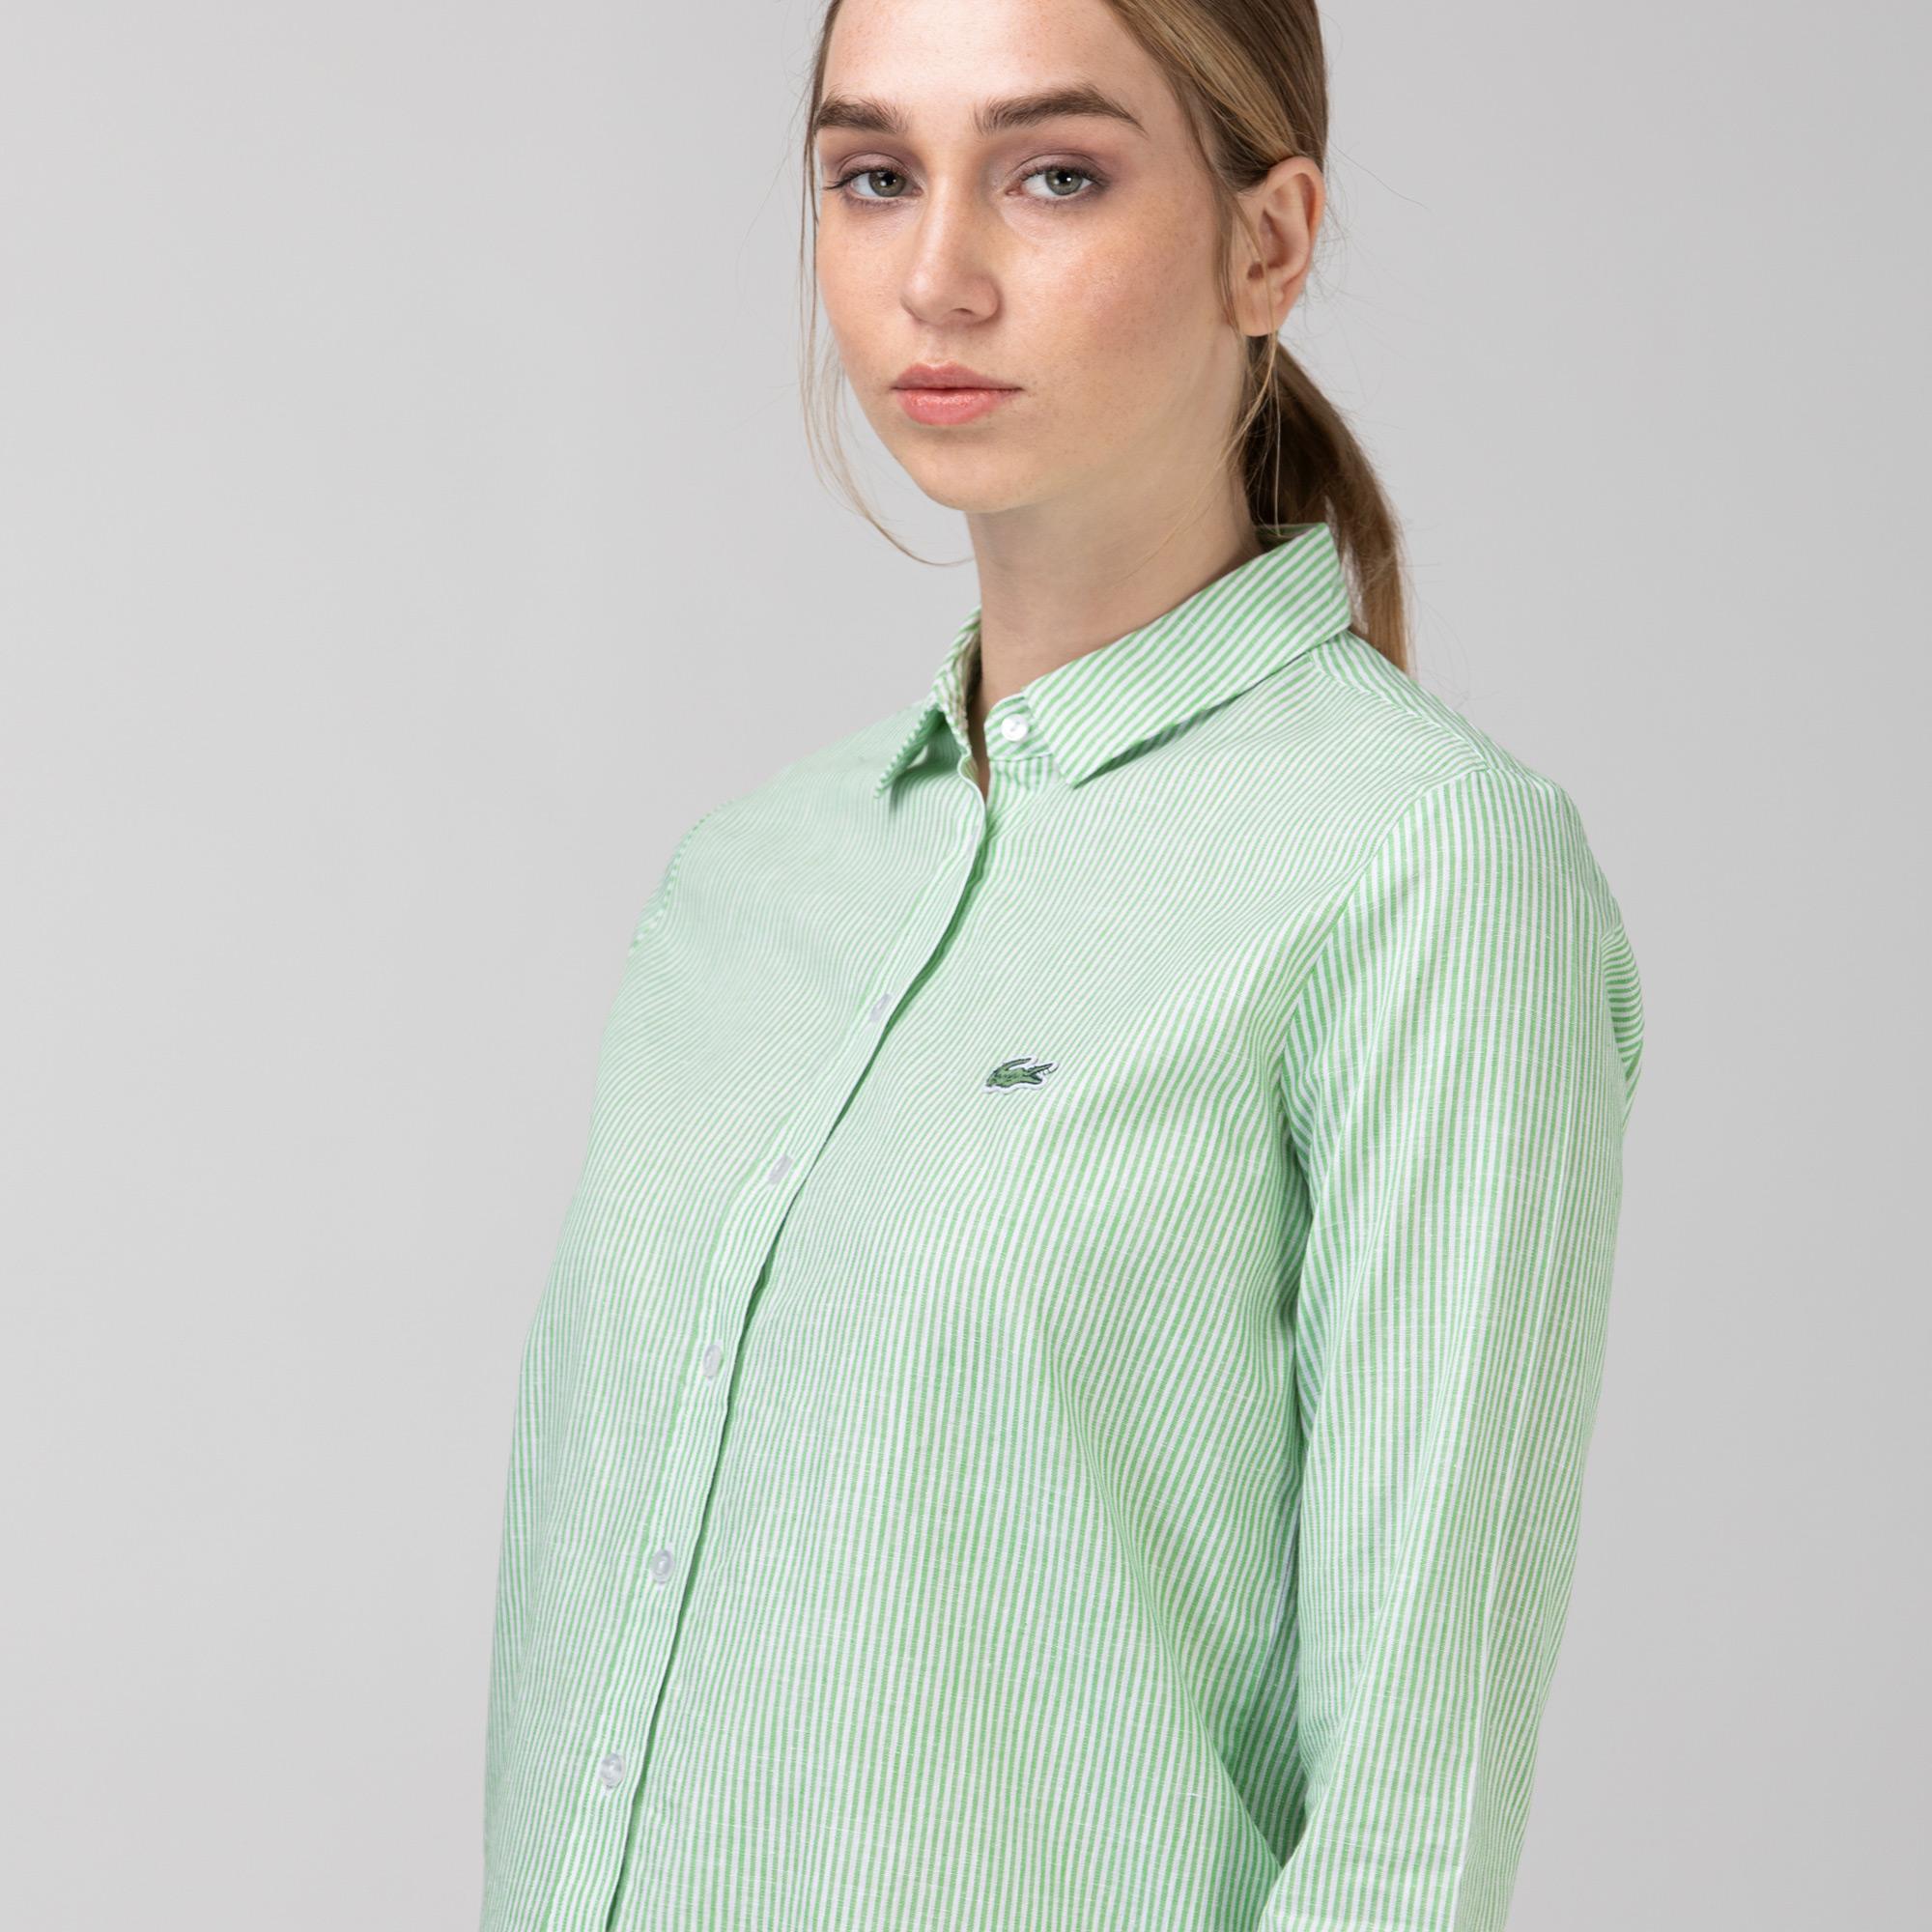 Lacoste Kadın Çizgili Yeşil Gömlek. 4